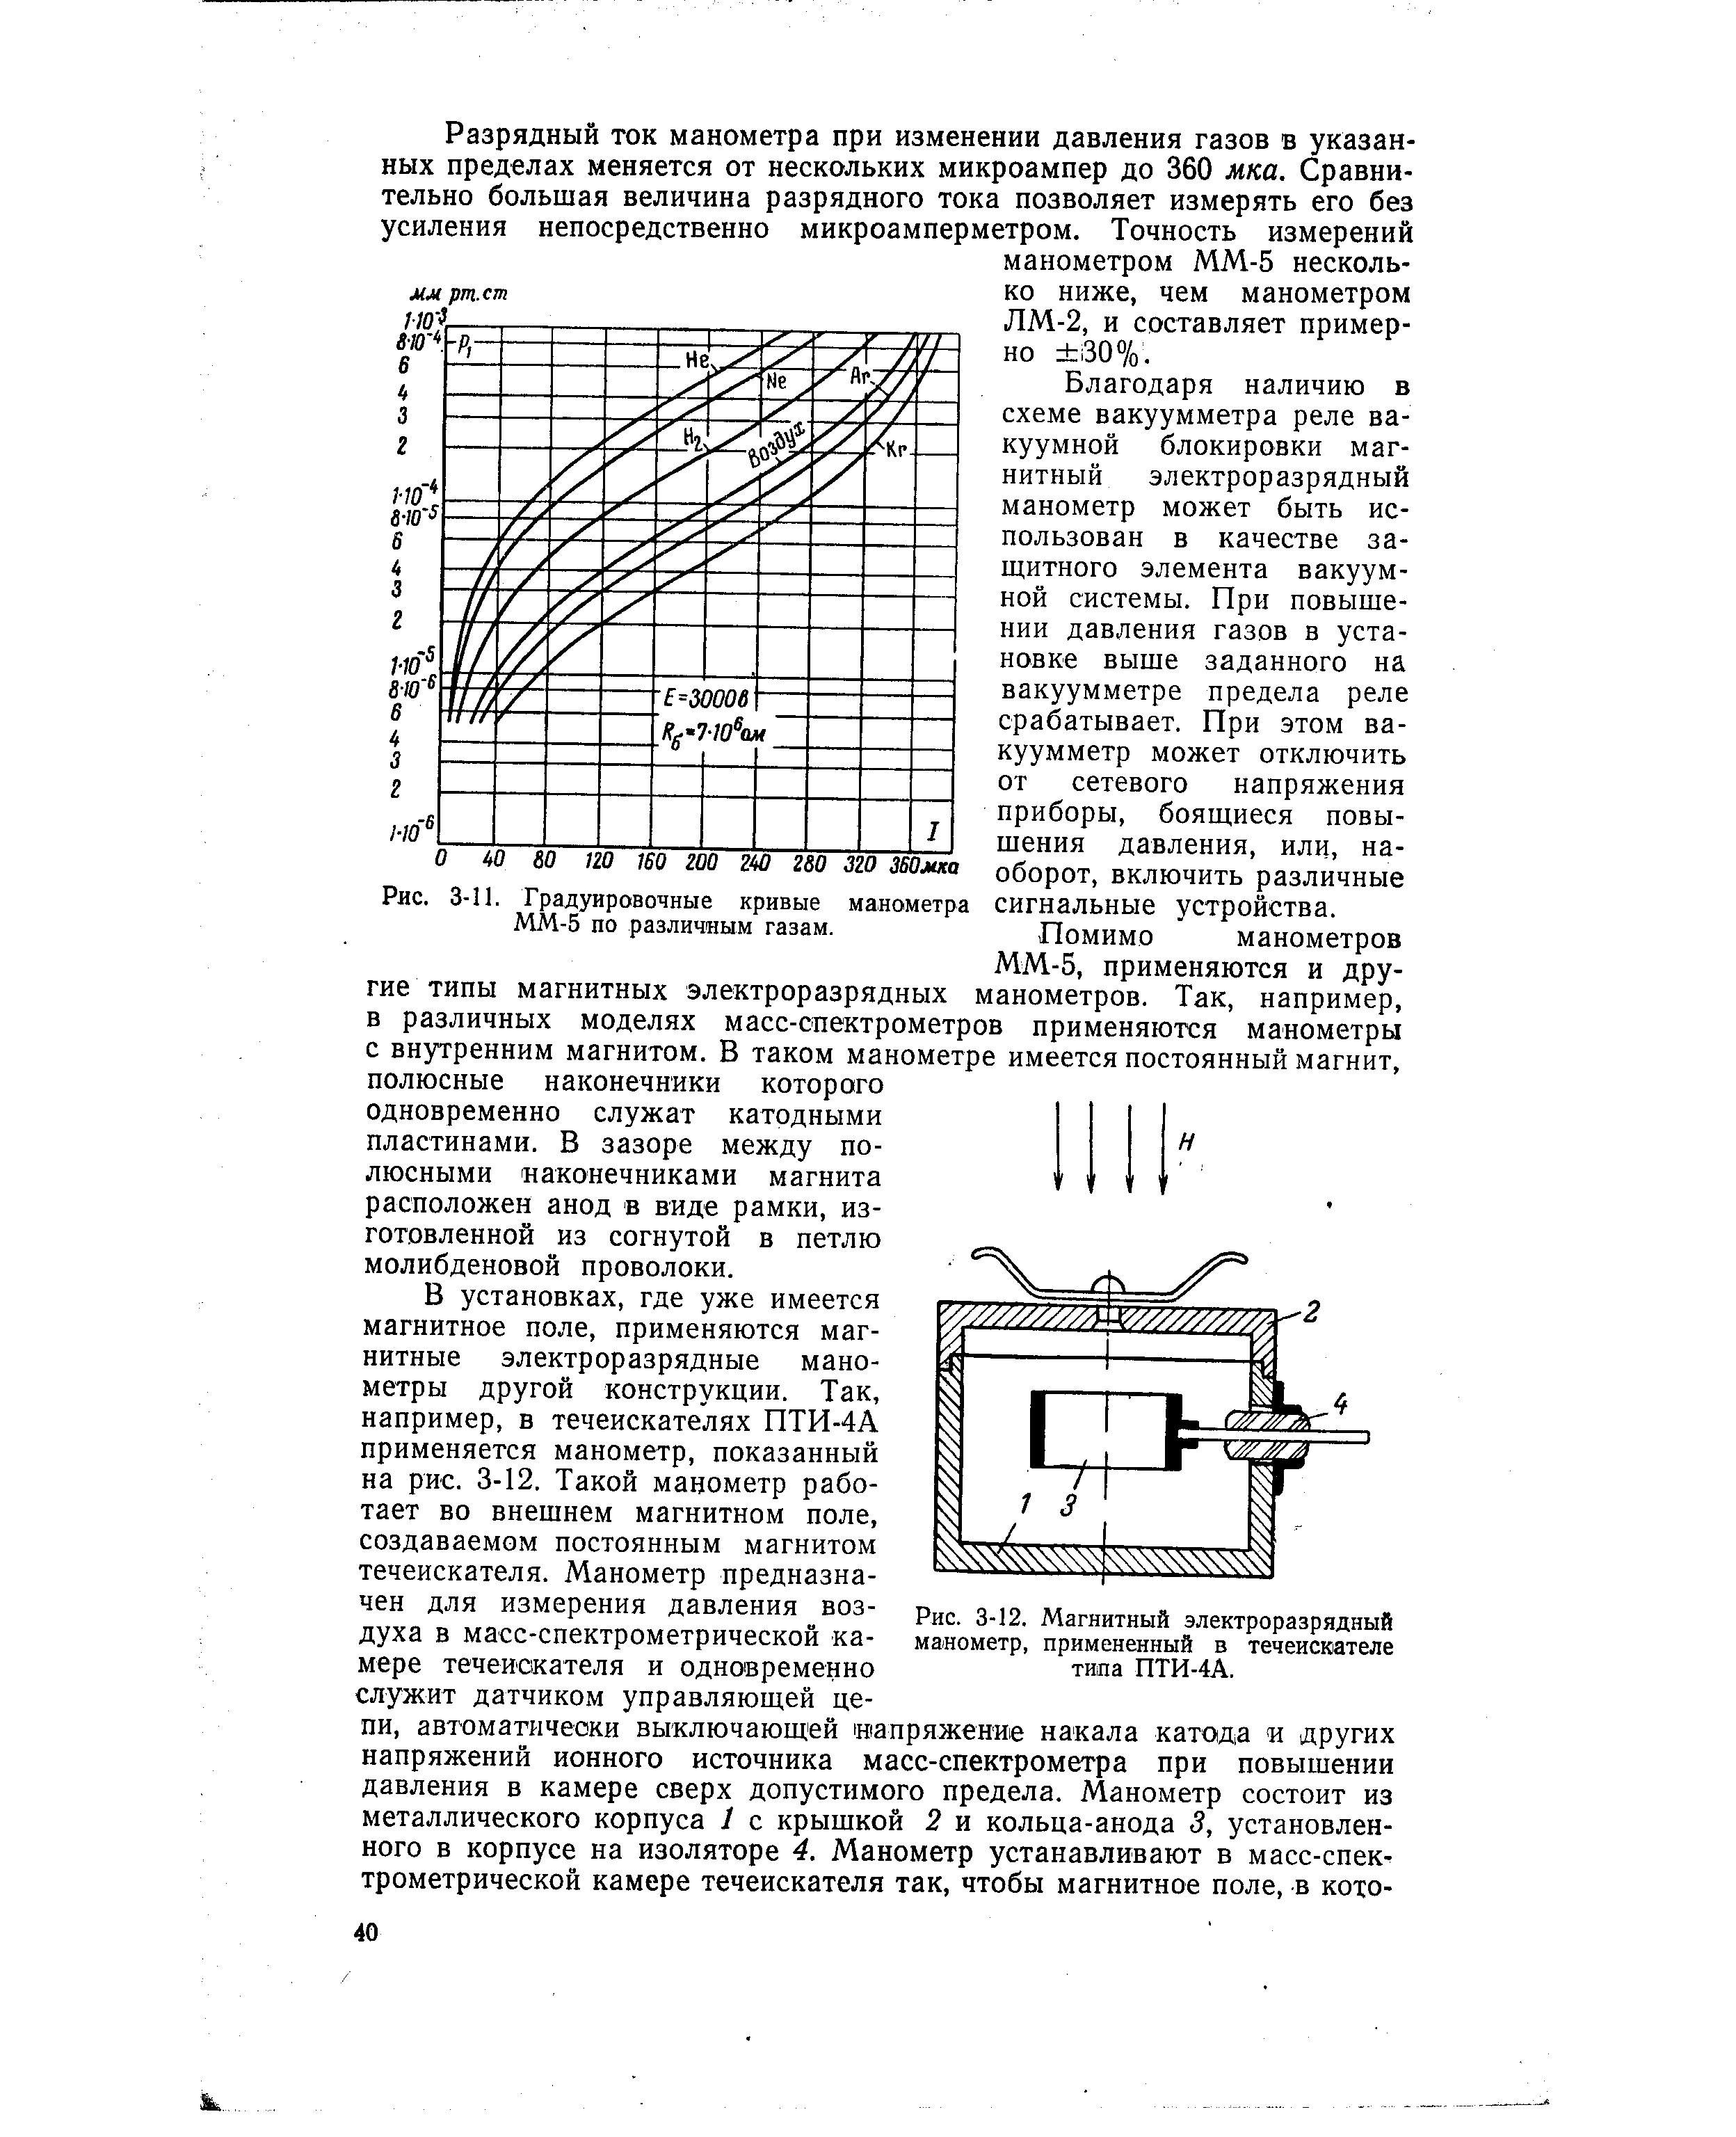 Рис. 3-12. Магнитный электроразрядный манометр, примененный в течеискателе типа ПТИ-4А.
